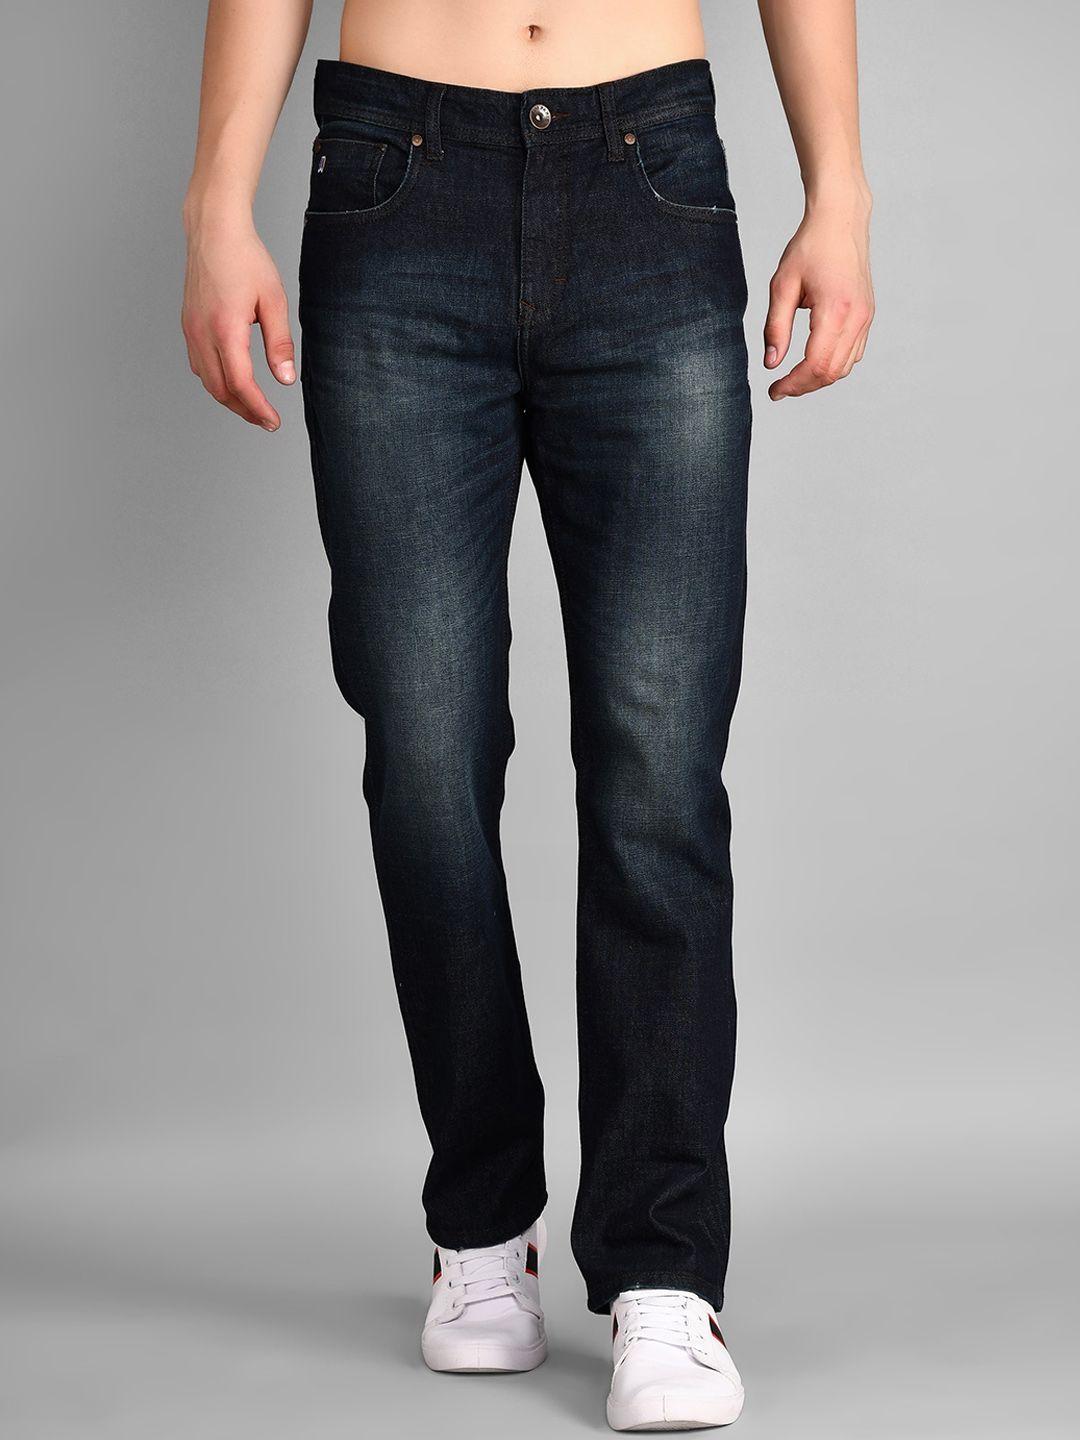 tim paris men clean look comfort mid-rise light fade cotton stretchable jeans